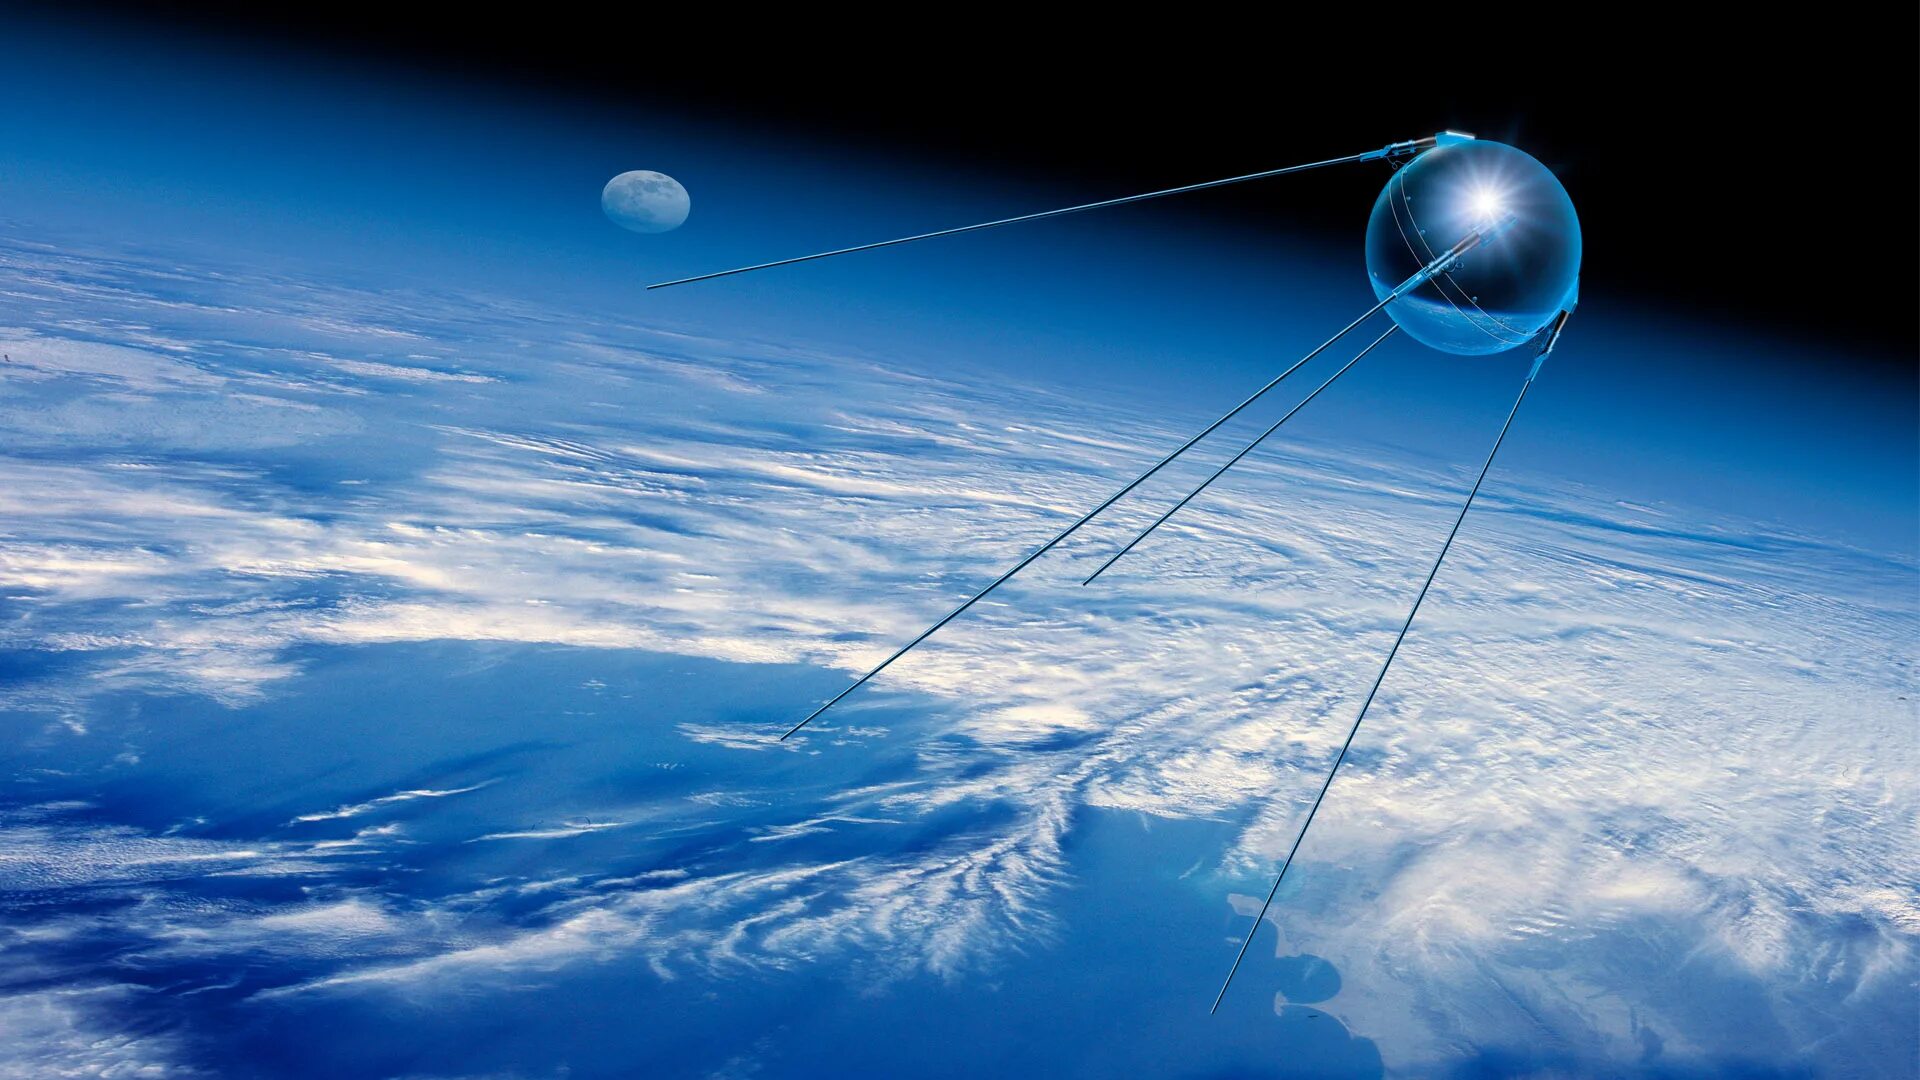 Первый искусственный спутник фото. Спутник 1 первый искусственный Спутник земли. «Спутник-1», первый искуссттвенный Спутник. Первый искусственный Спутник земли 1957. ПС-1 Спутник.